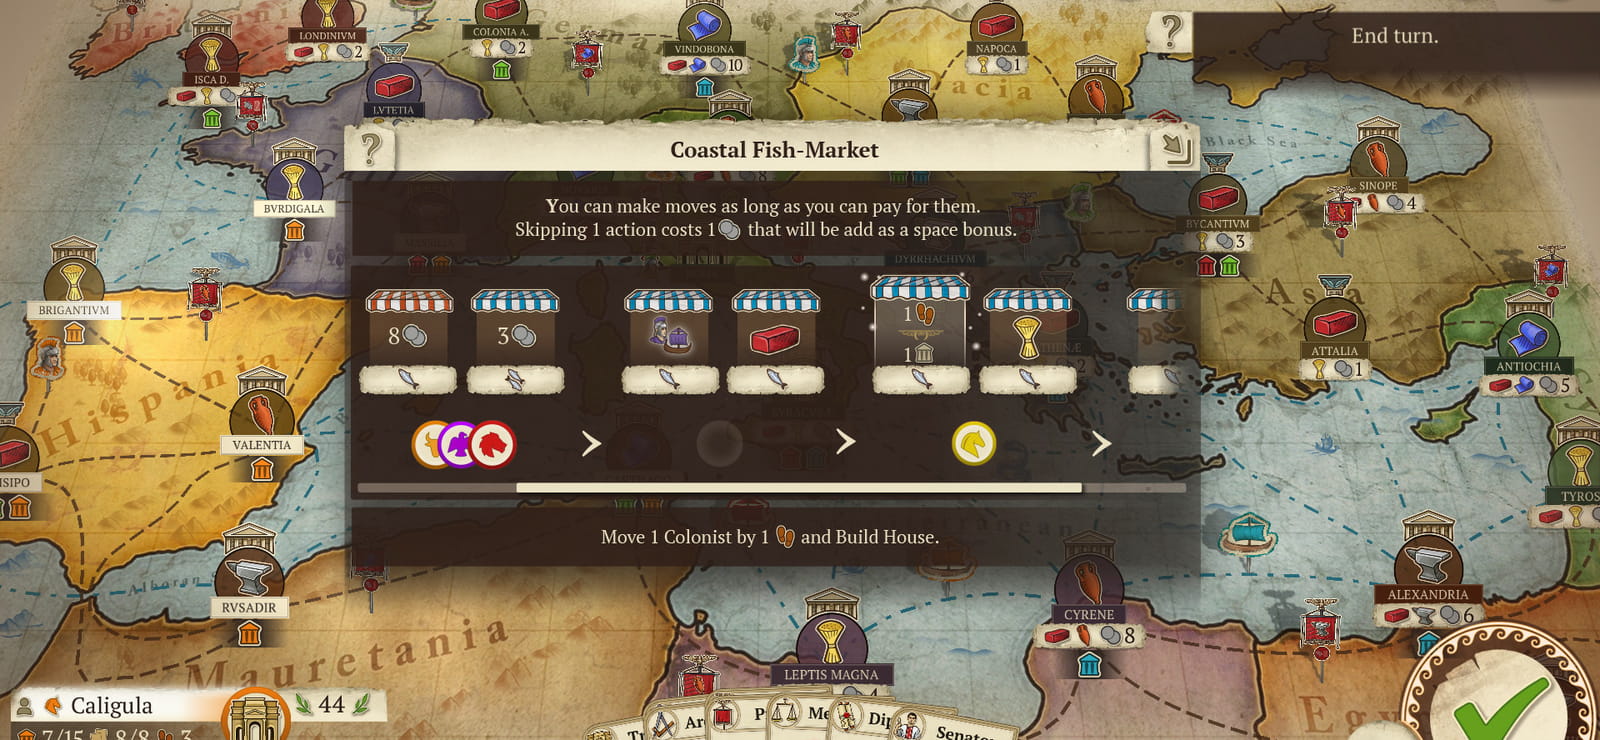 Concordia: Digital Edition - Fish Market